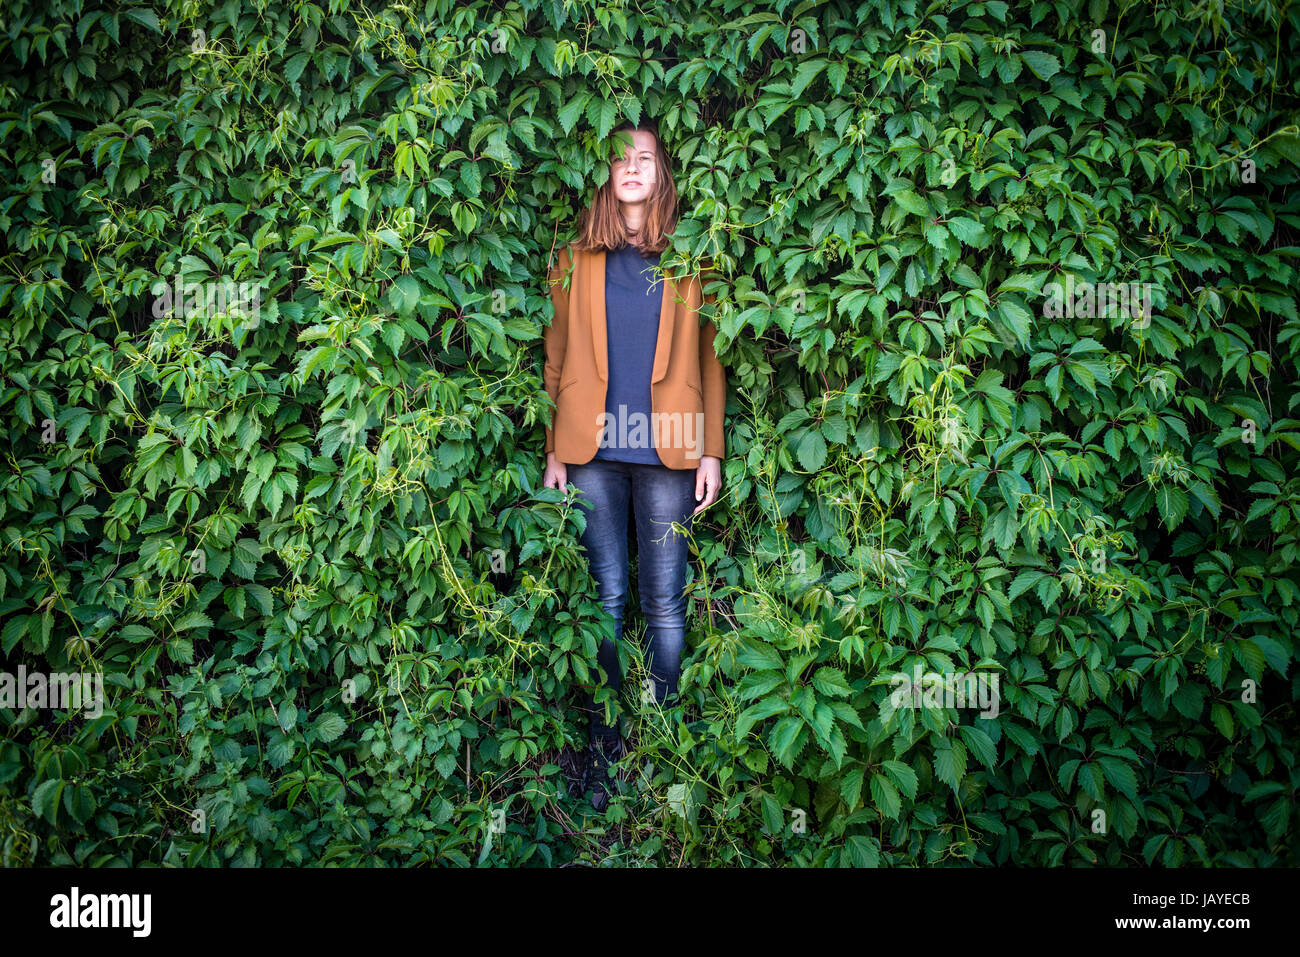 Une jeune femme se tient près d'un mur entouré de verdure Banque D'Images